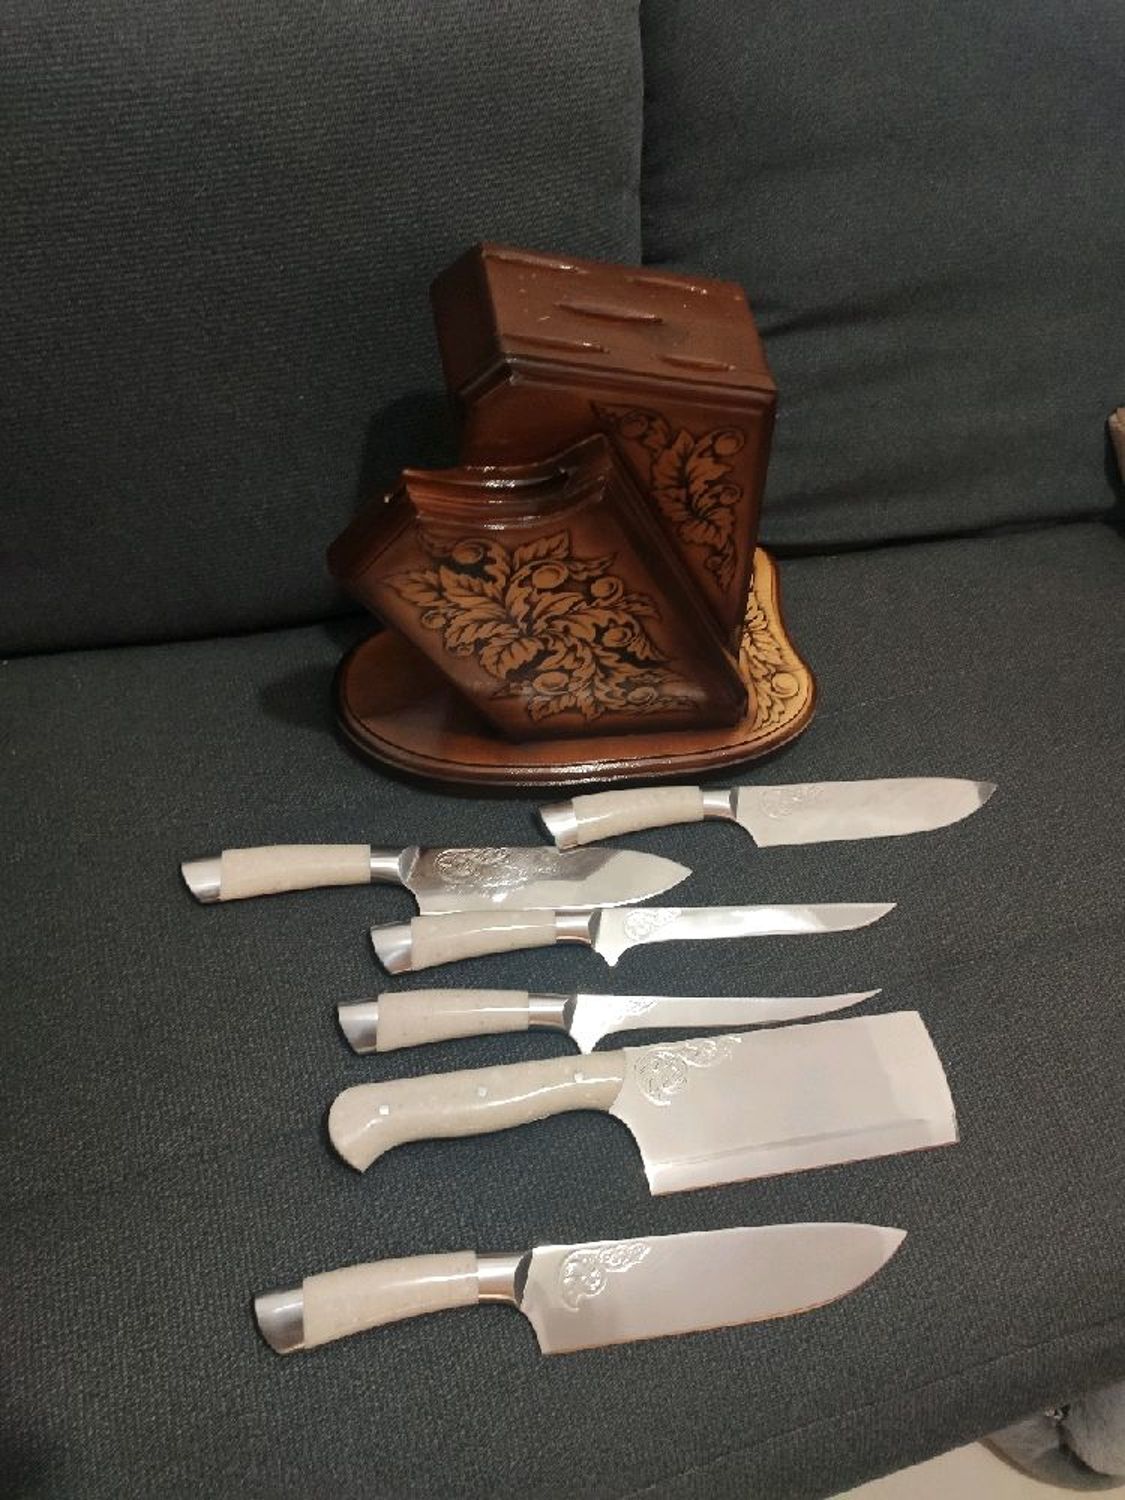 Photo №1 к отзыву покупателя Alexander Kovalenchik о товаре Кухонные ножи: Набор кухонных ножей